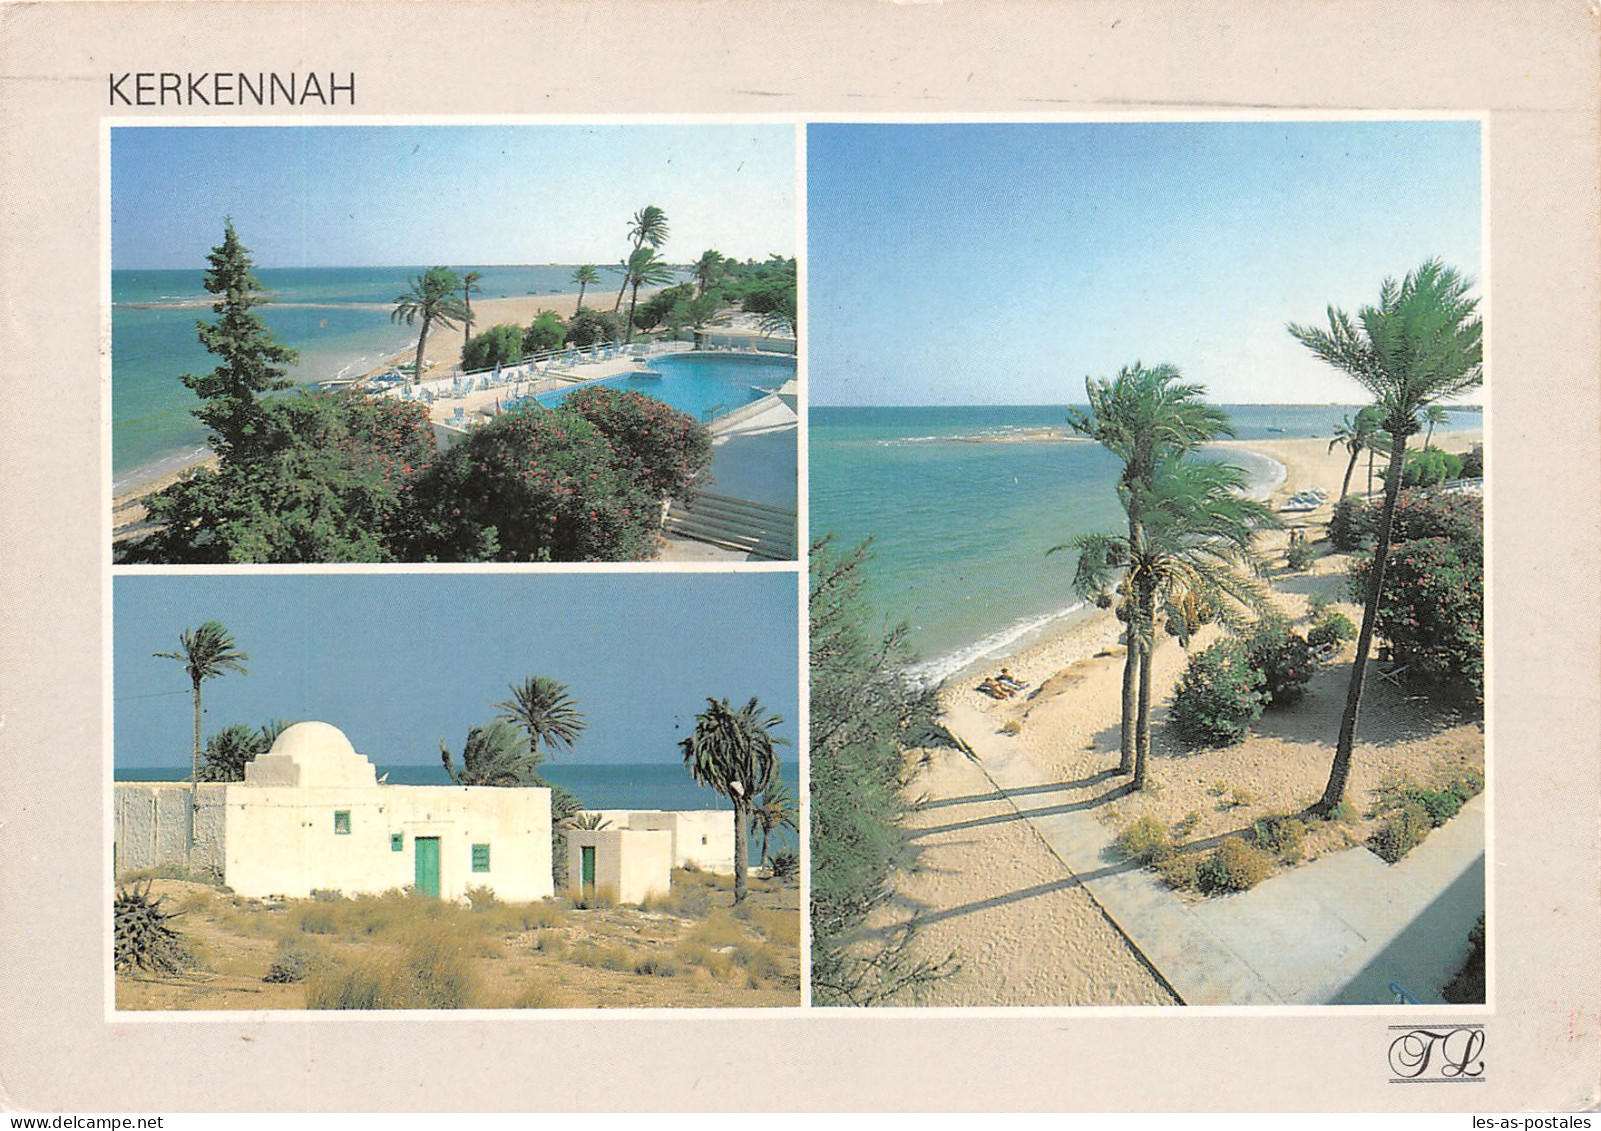 TUNISIE KERKENNAH - Tunisia